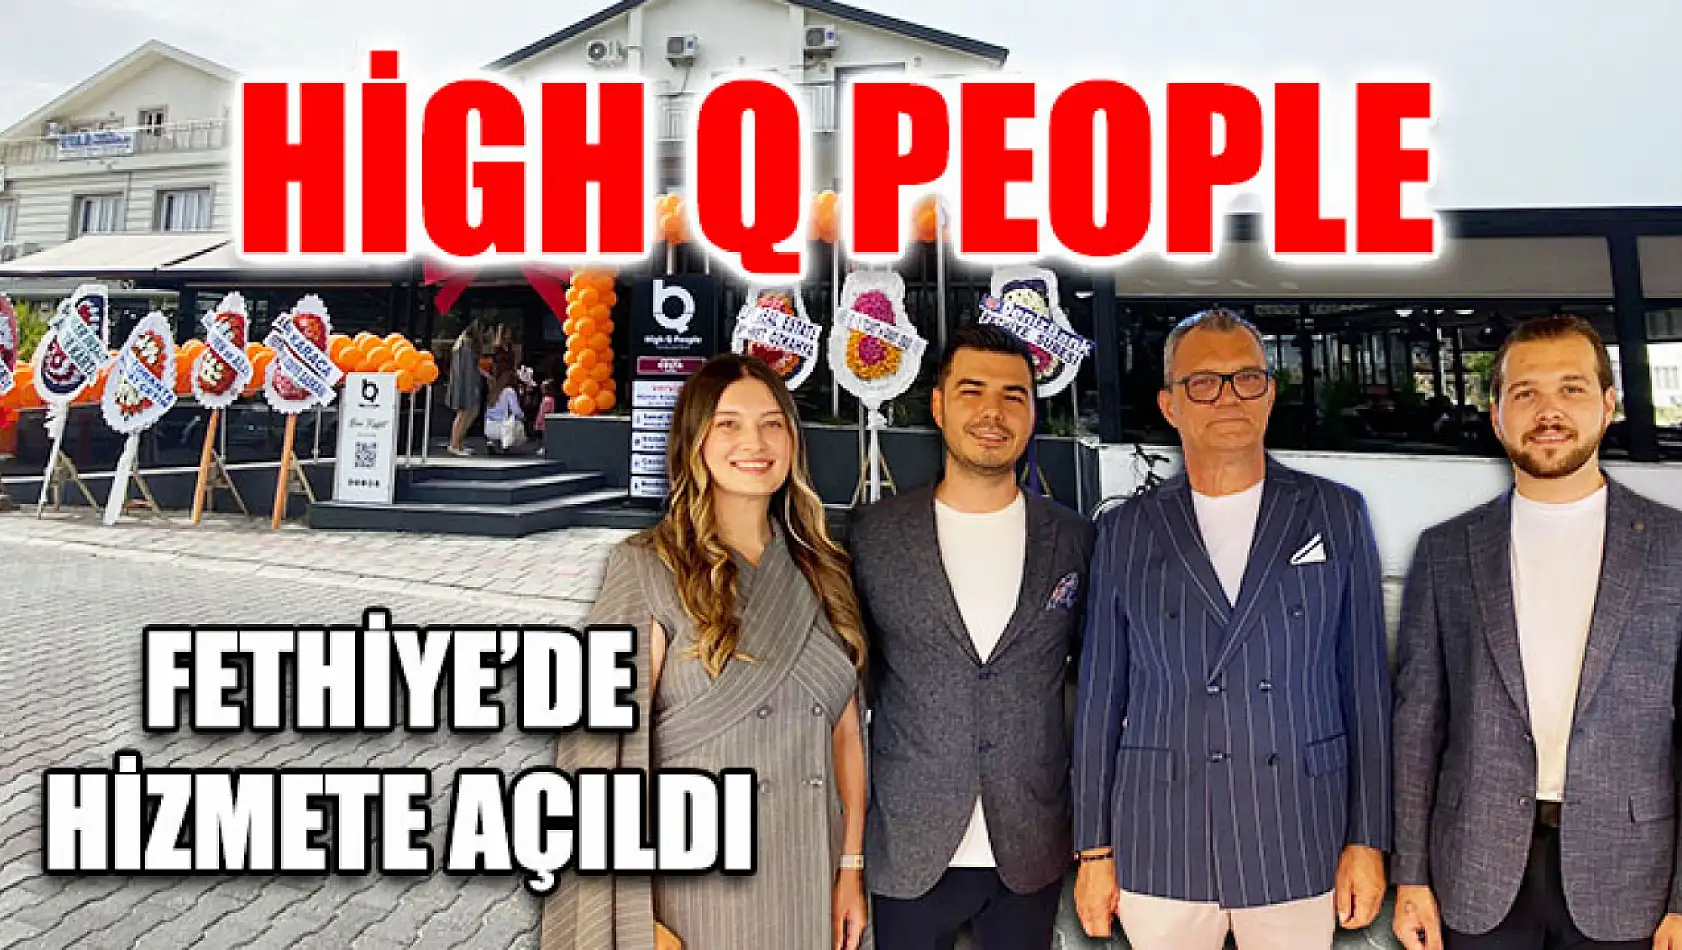 High Q People Fethiye'de hizmete açıldı